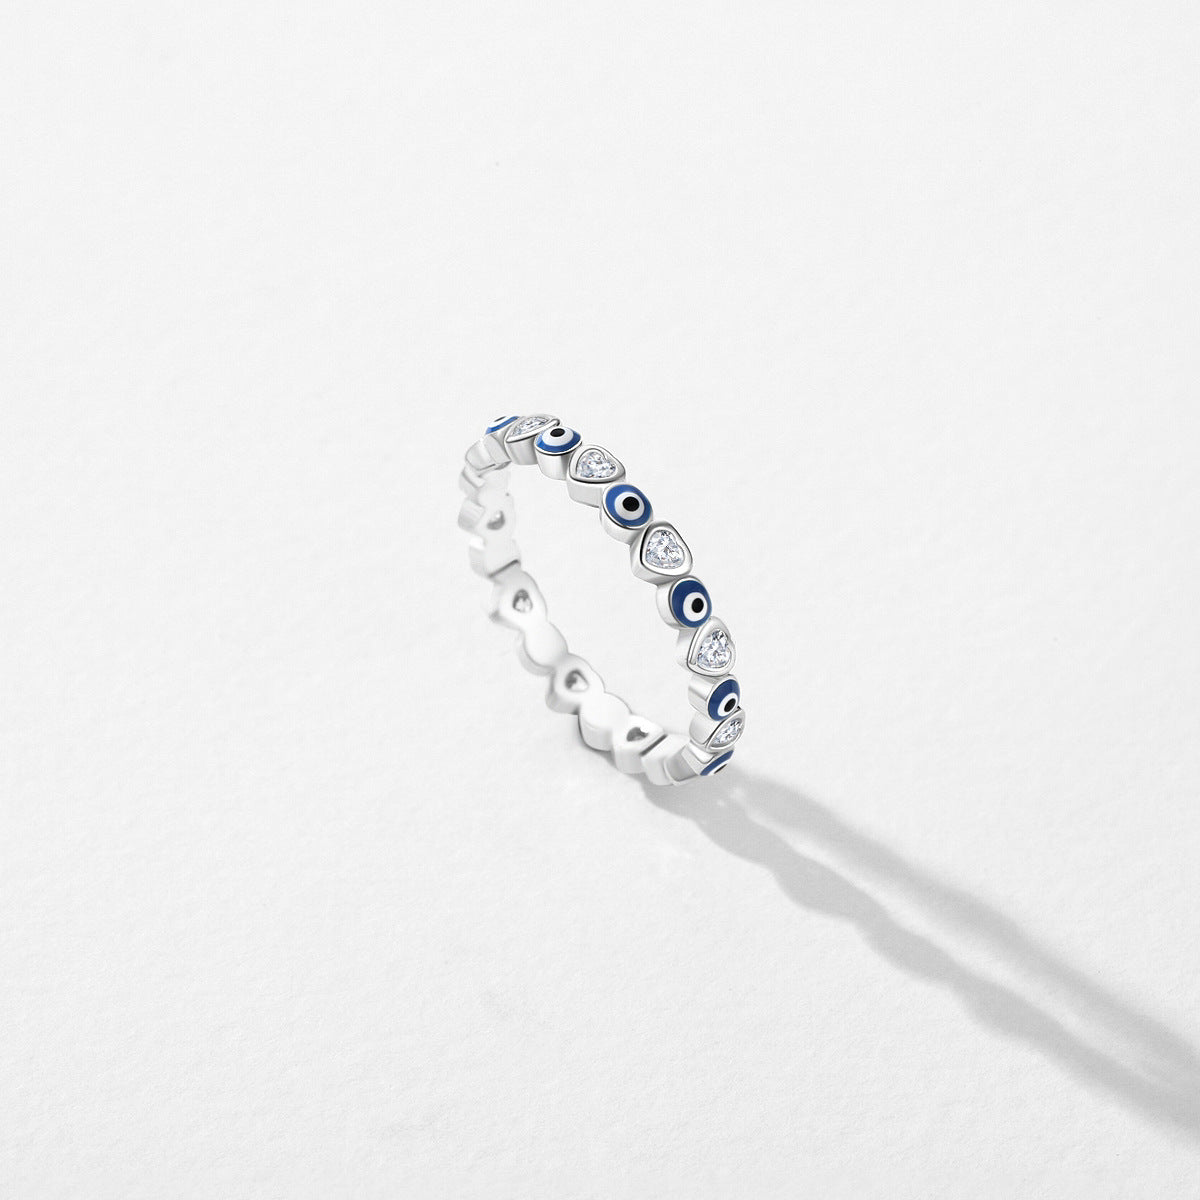 Enamel Blue Eye Zircon Sterling Silver Ring for Women with Cross-border Jewelry Design